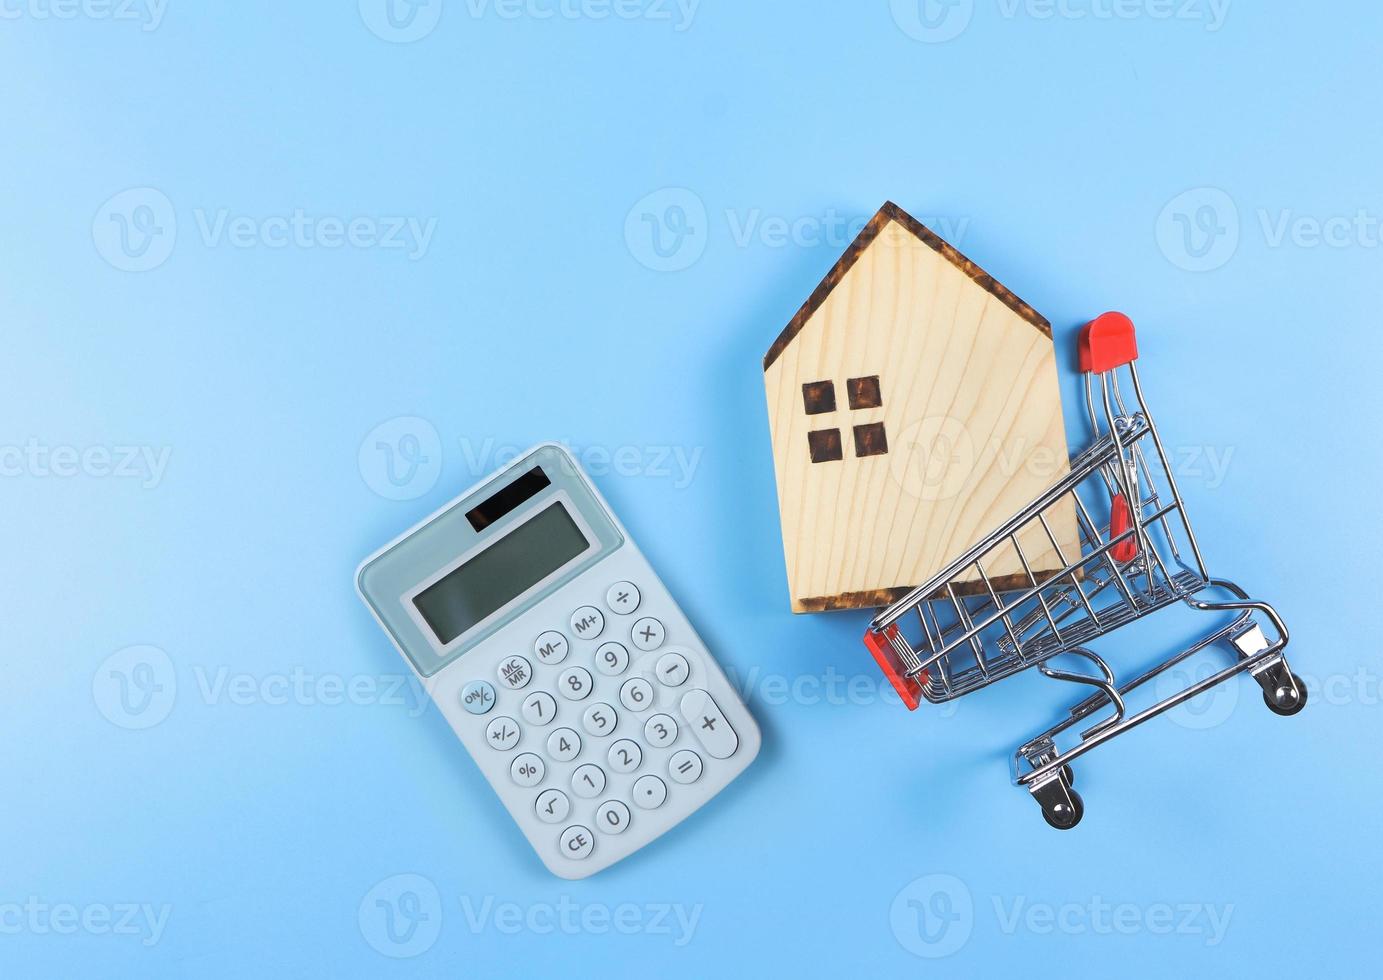 mise en page à plat du modèle de maison en bois dans le caddie et calculatrice bleue sur fond bleu avec espace de copie, concept d'achat de maison. photo